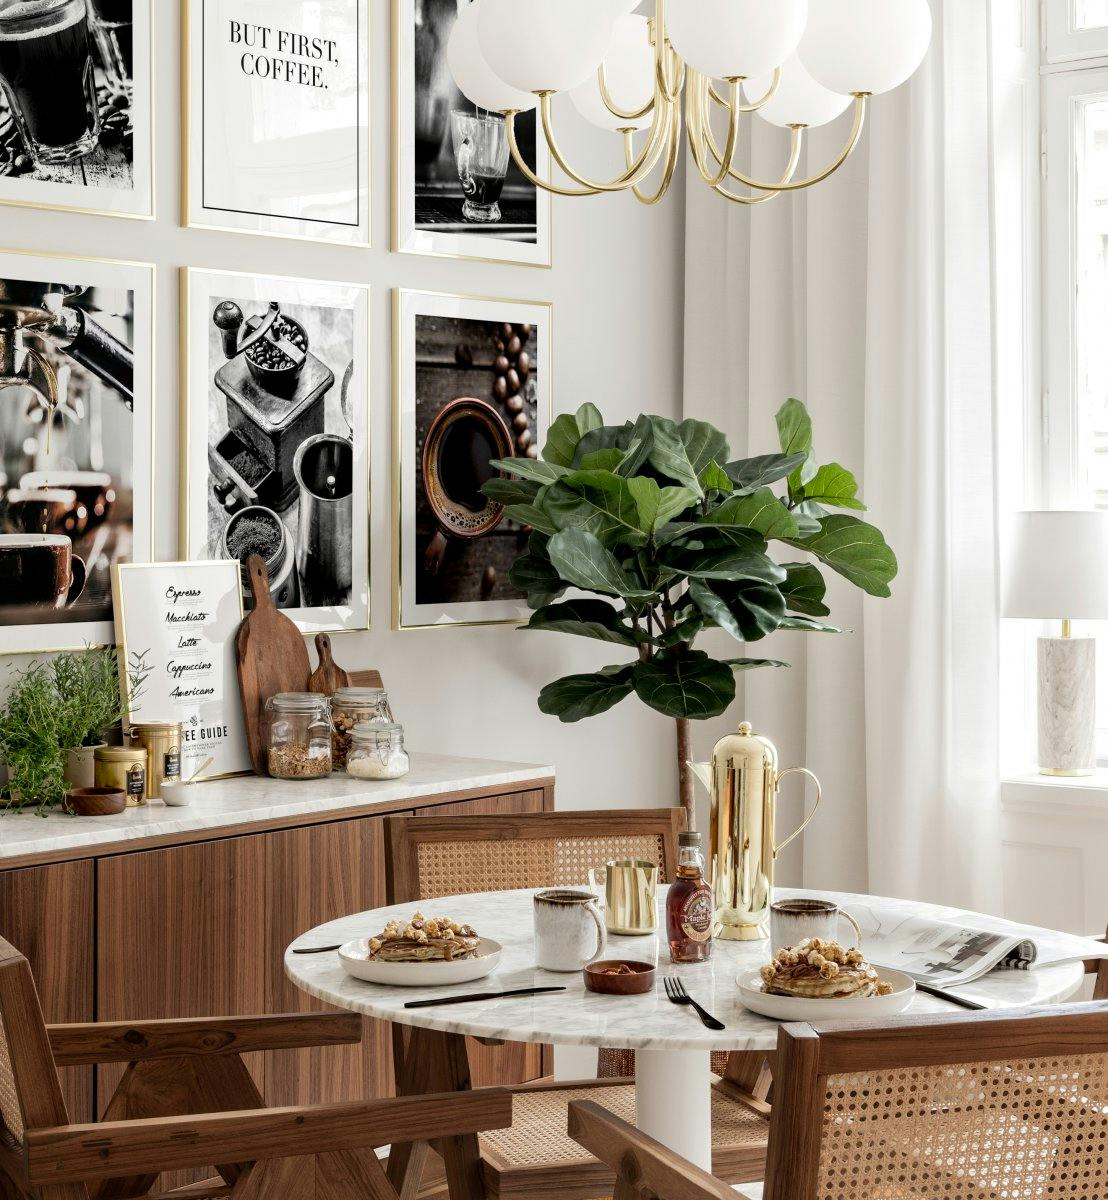 جدار معرض لوحات صور القهوة وإطارات ذهبية لجدارغرفة الطعام